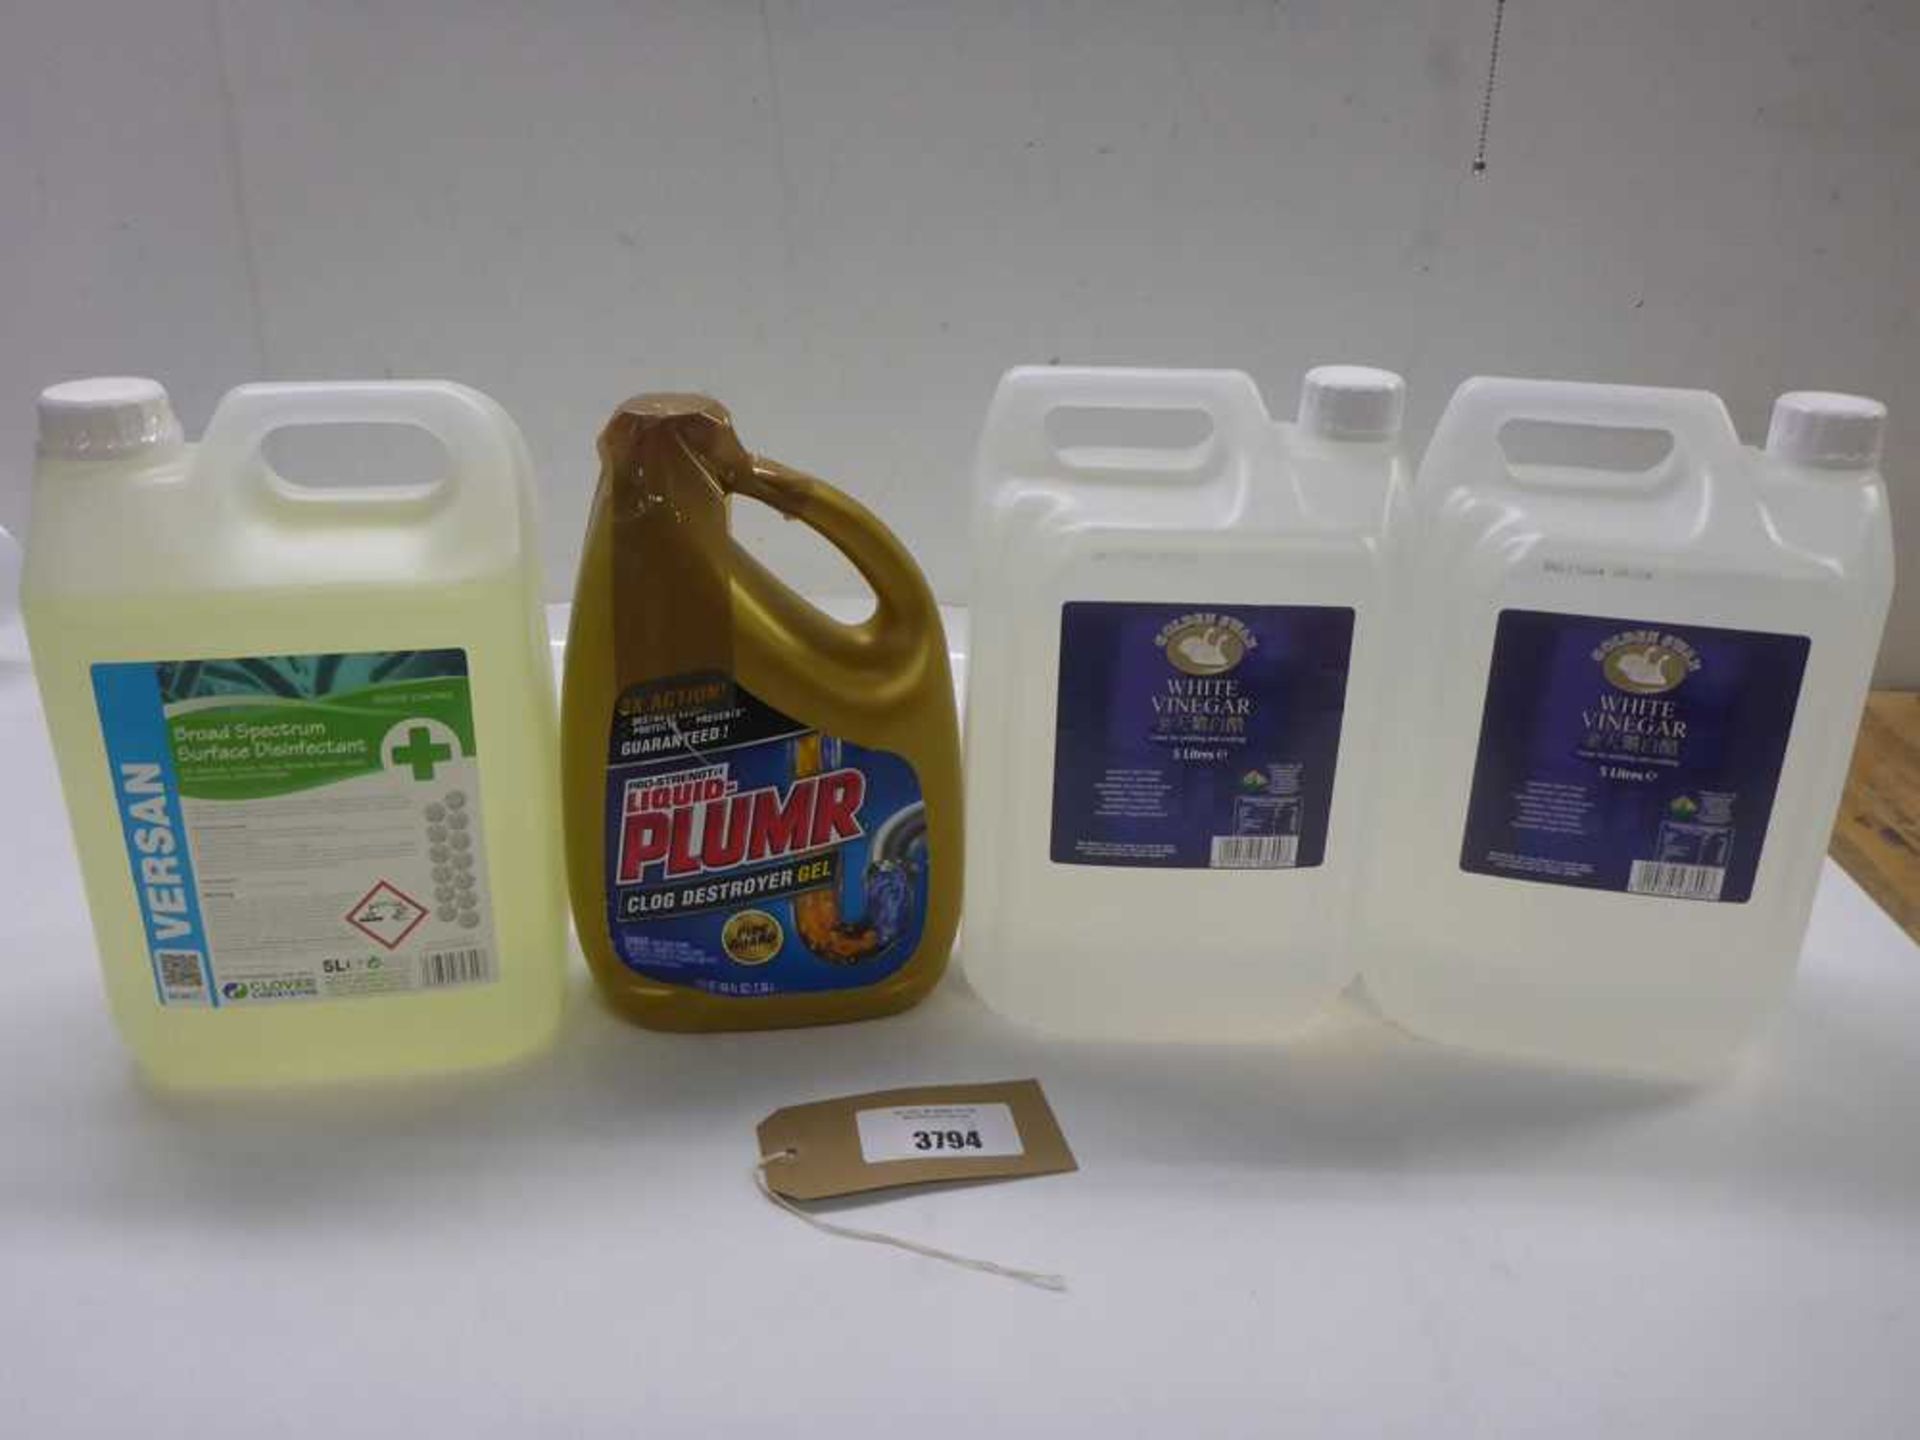 +VAT White vinegar, surface disinfectant and clog destroyer gel